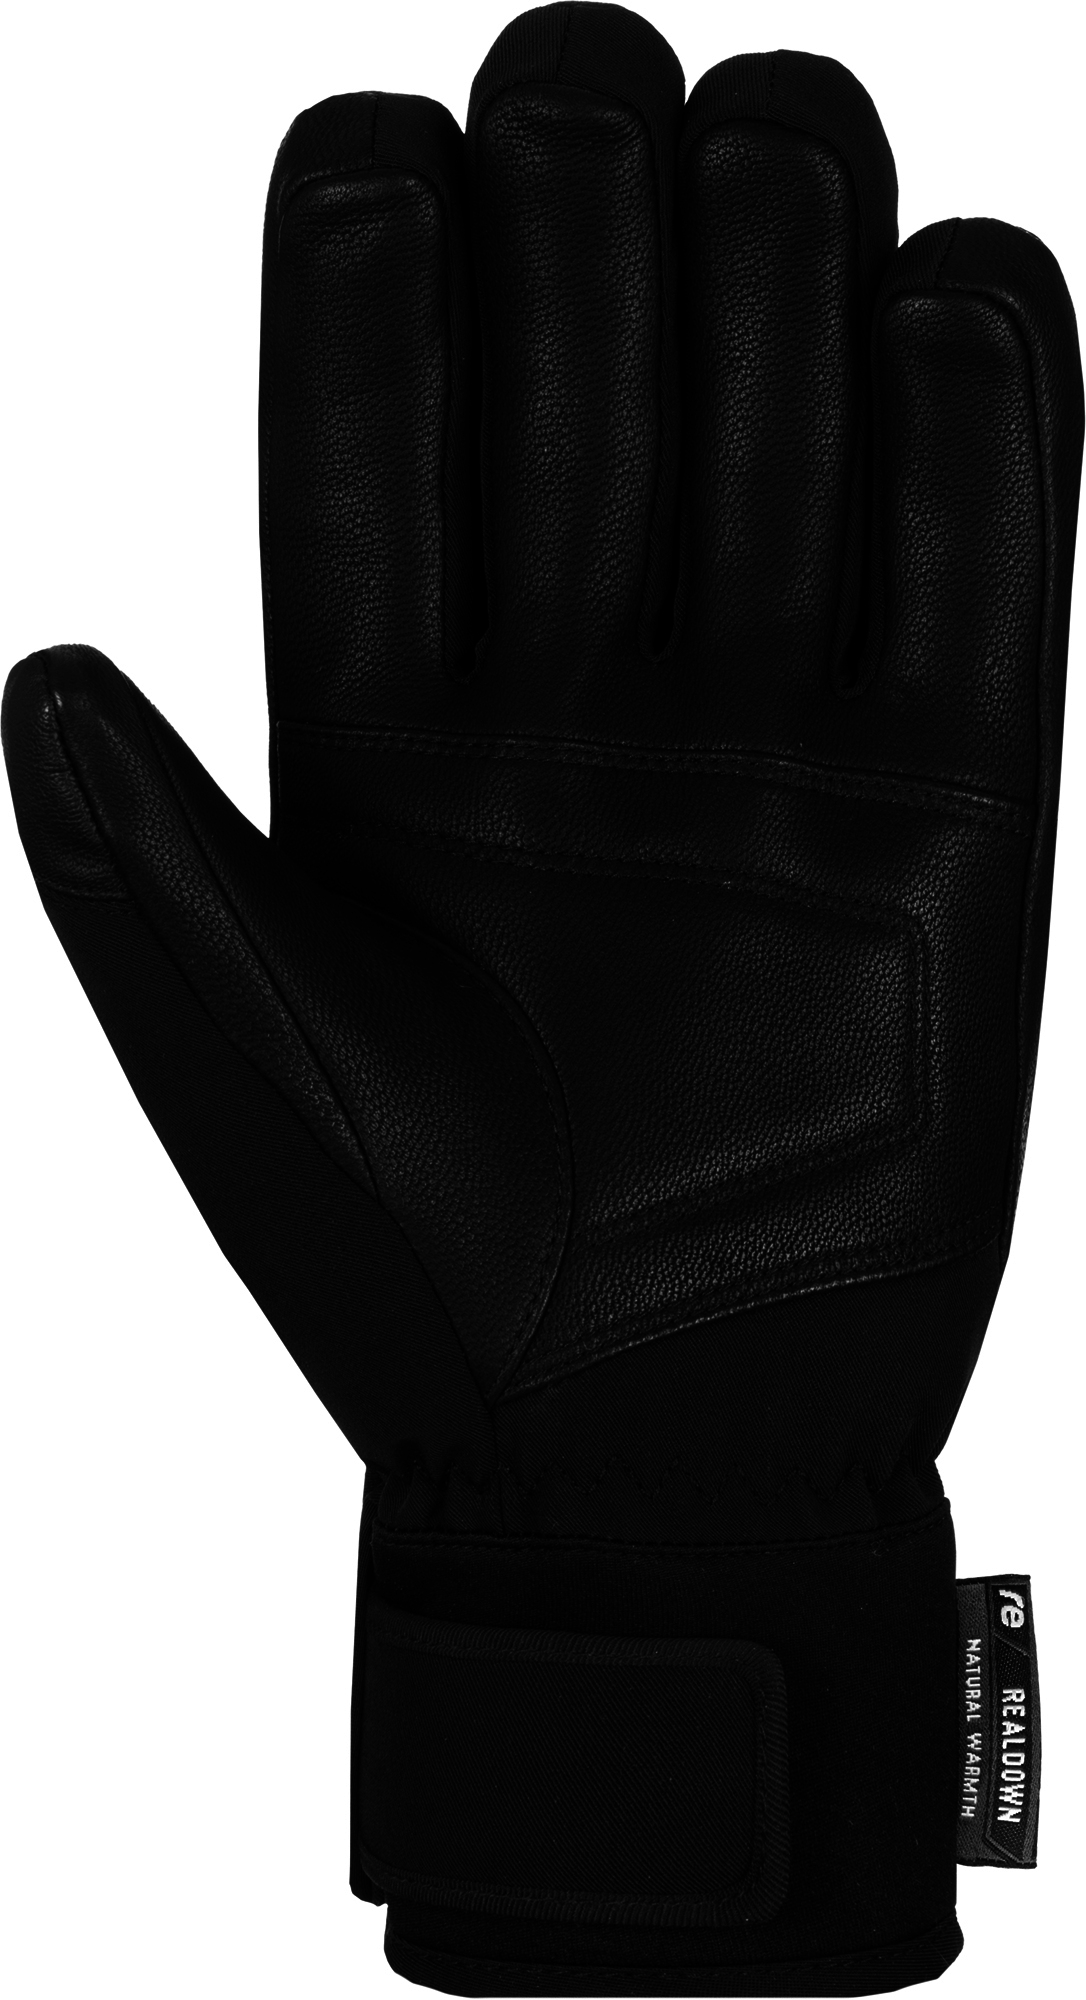 Reusch Down Spirit GTX SC Gents Glove